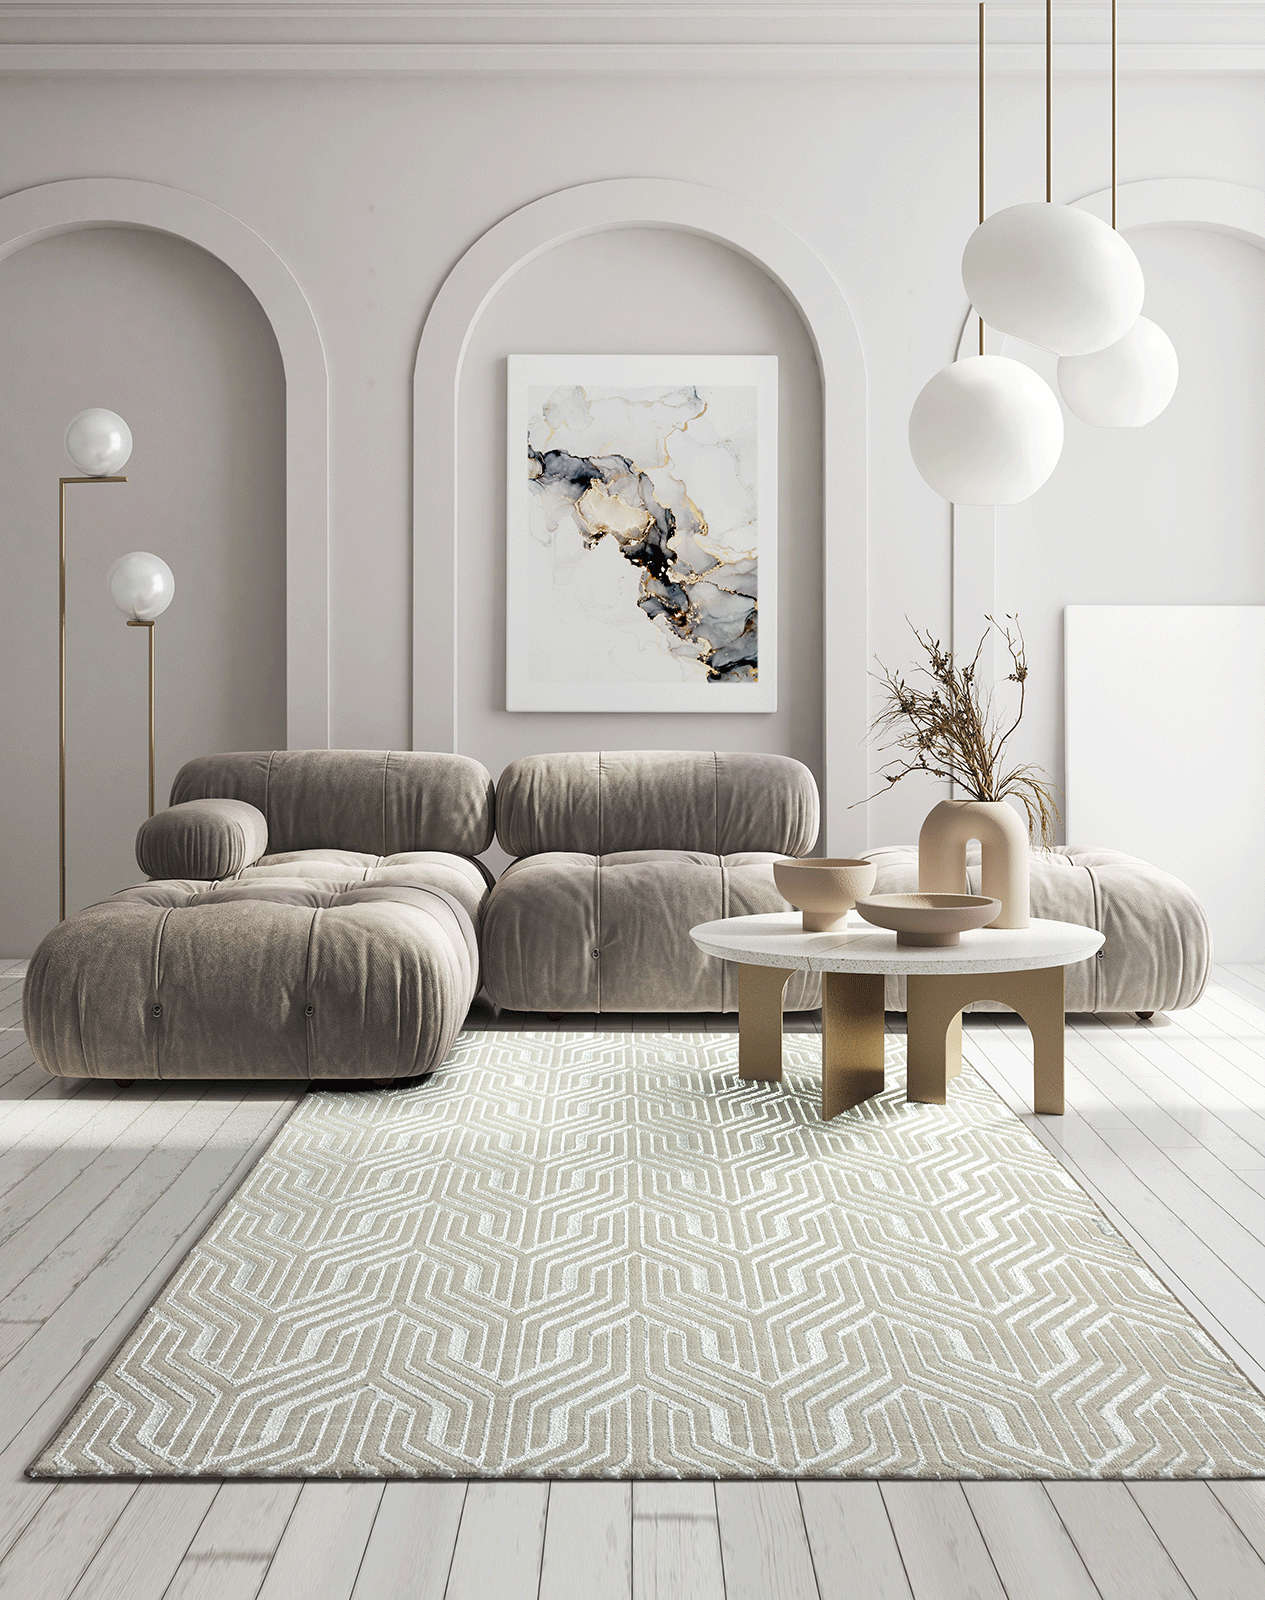             Soft pile carpet in cream - 230 x 160 cm
        